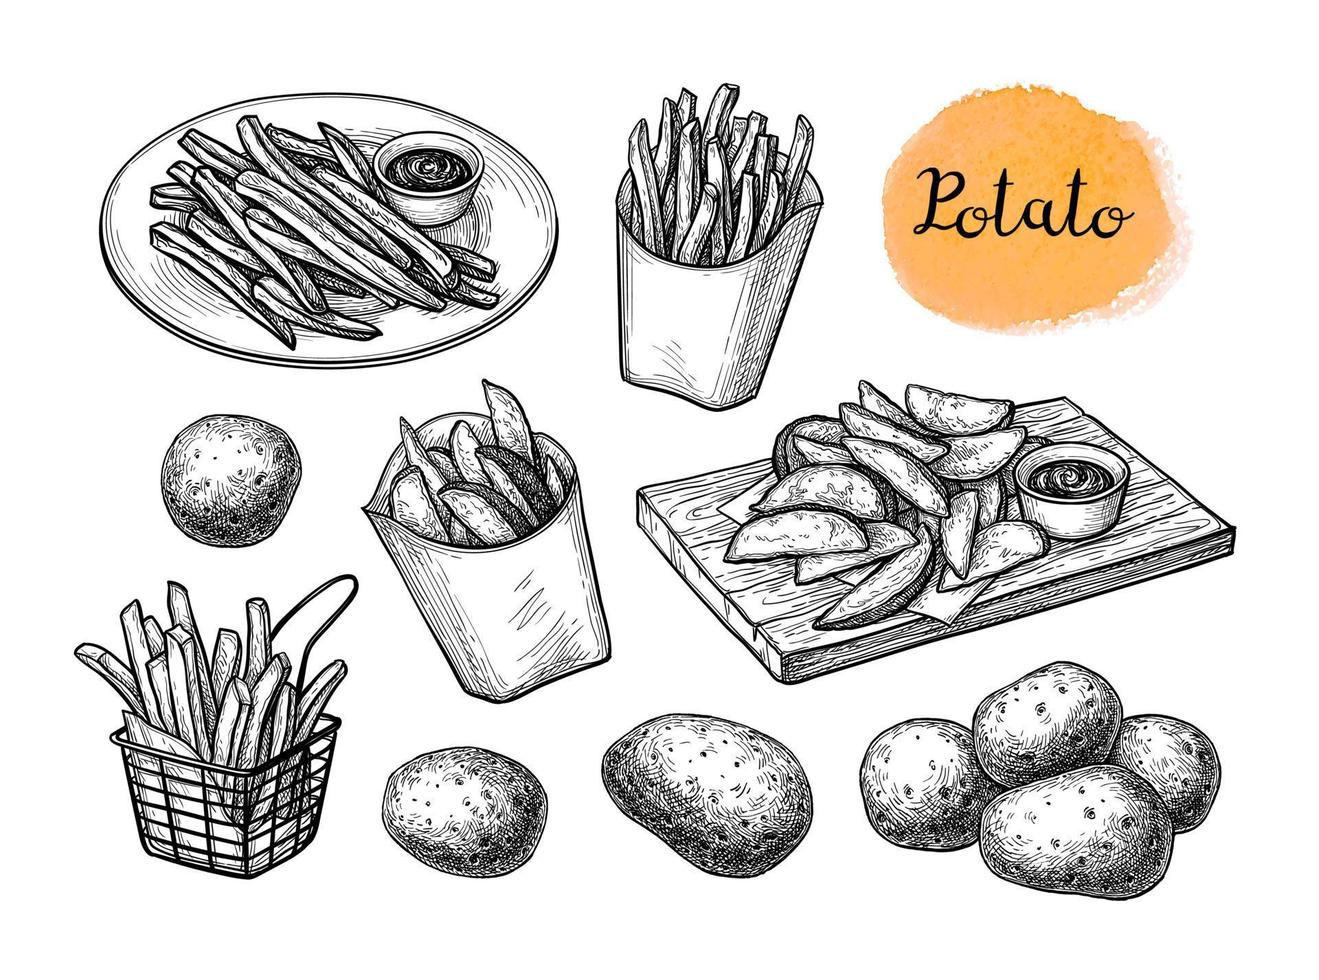 patata porciones y francés papas fritas tinta bosquejo aislado en blanco antecedentes. mano dibujado vector ilustración. retro estilo.